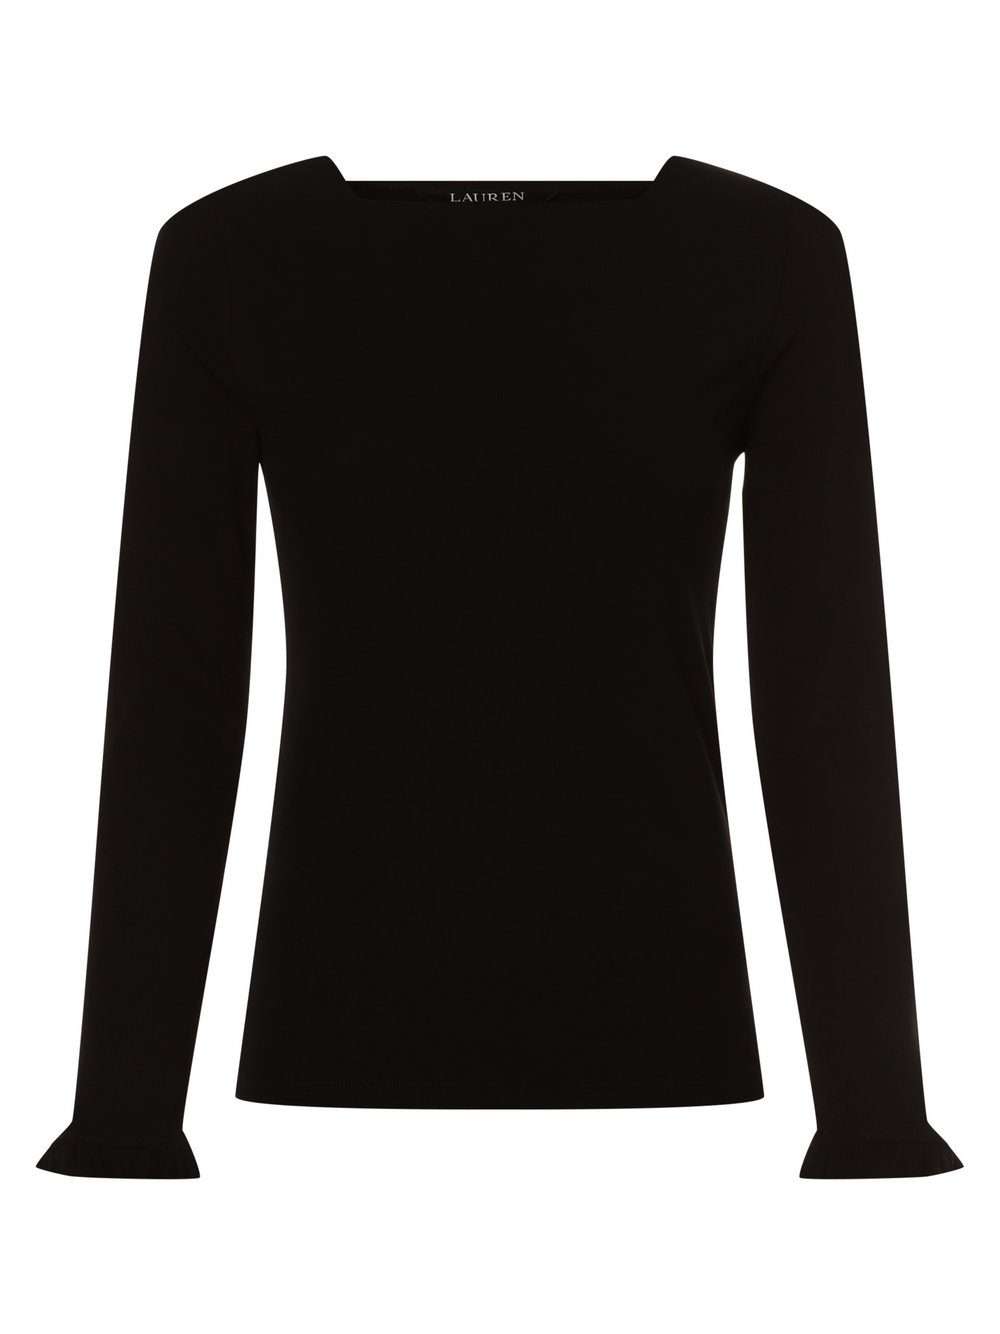 Lauren Ralph Lauren - Damska koszulka z długim rękawem, czarny